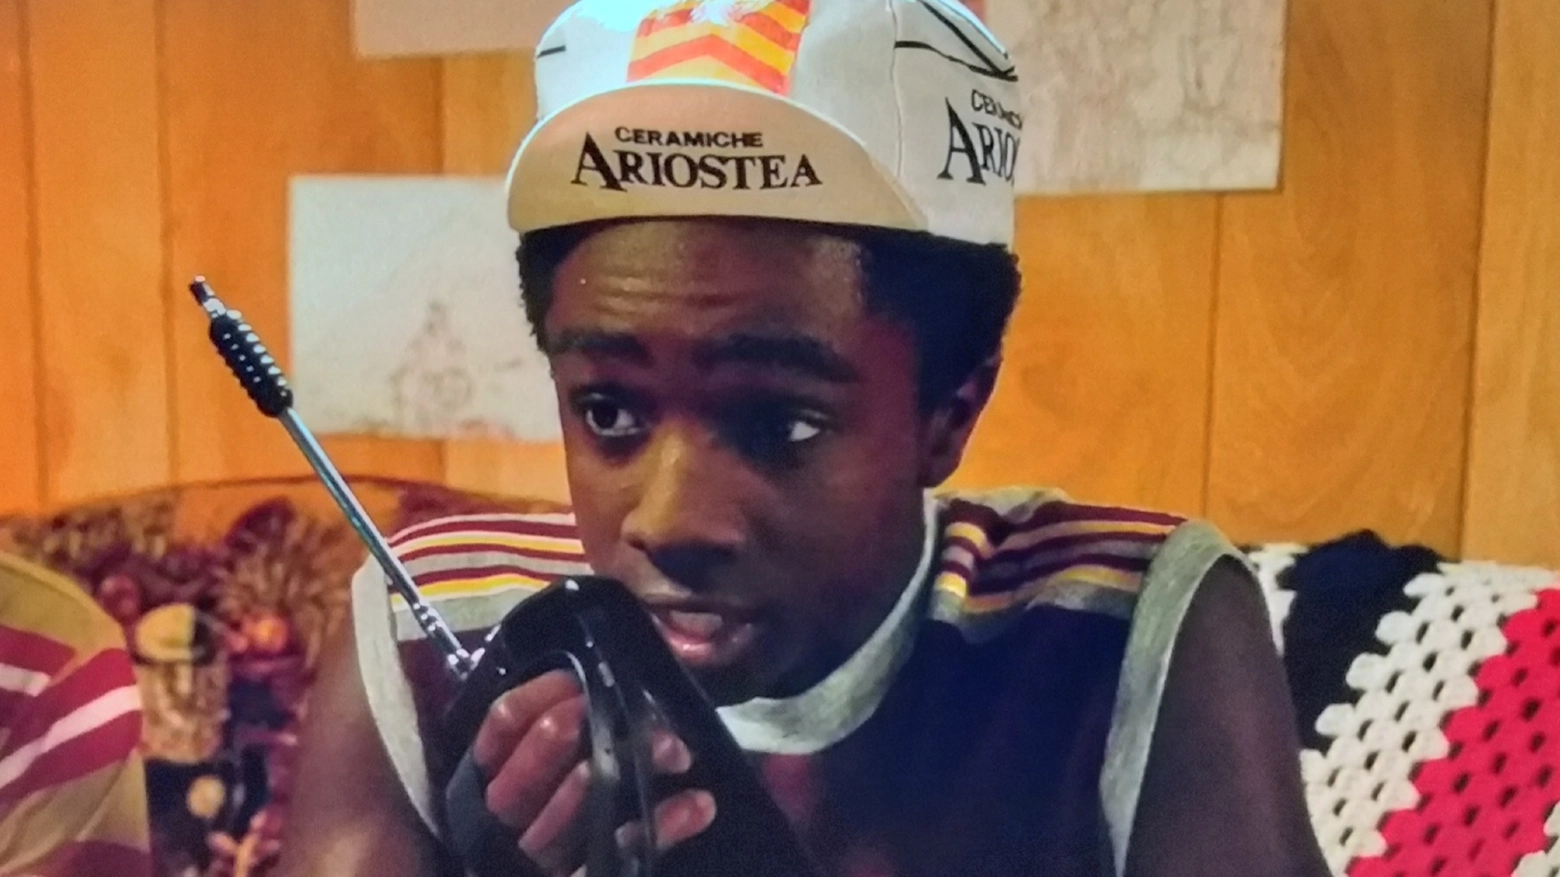 Lucas con il berrettino della ceramica Ariostea (foto Netflix)